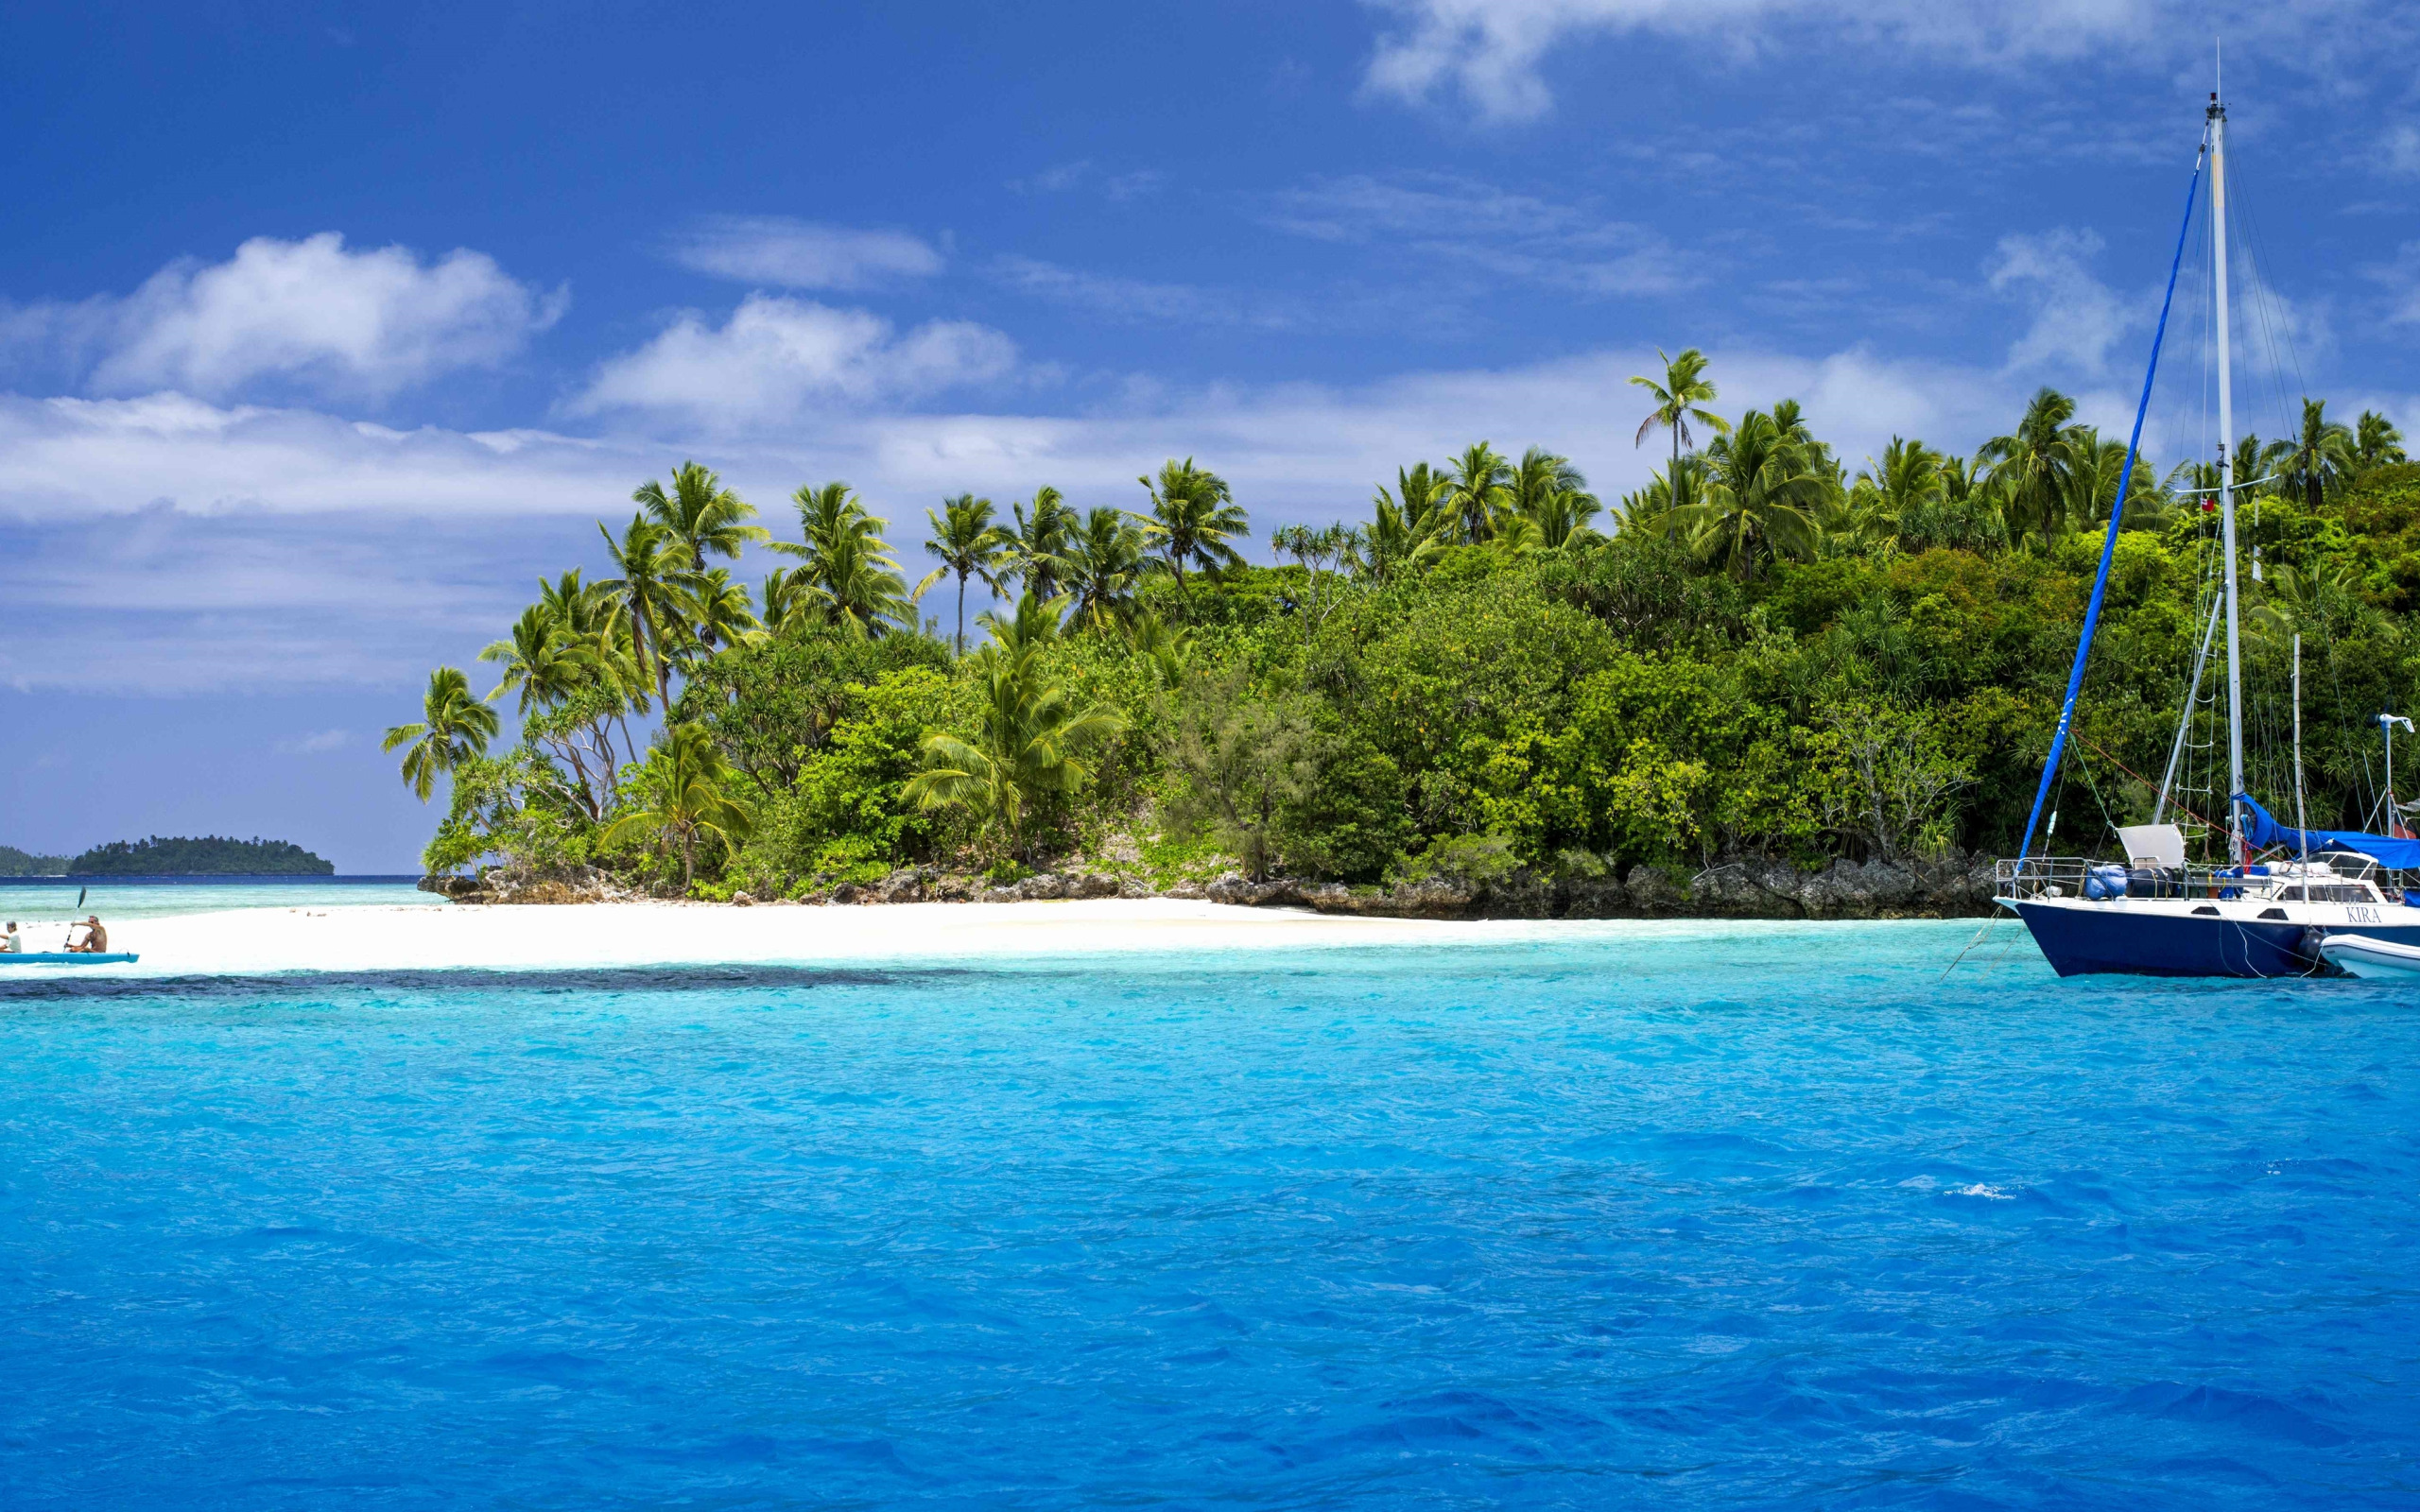 Boat island. Туамоту. Гавайи Мальдивы Карибы. Острова Туамоту природа. Мальдивы голубая Лагуна.